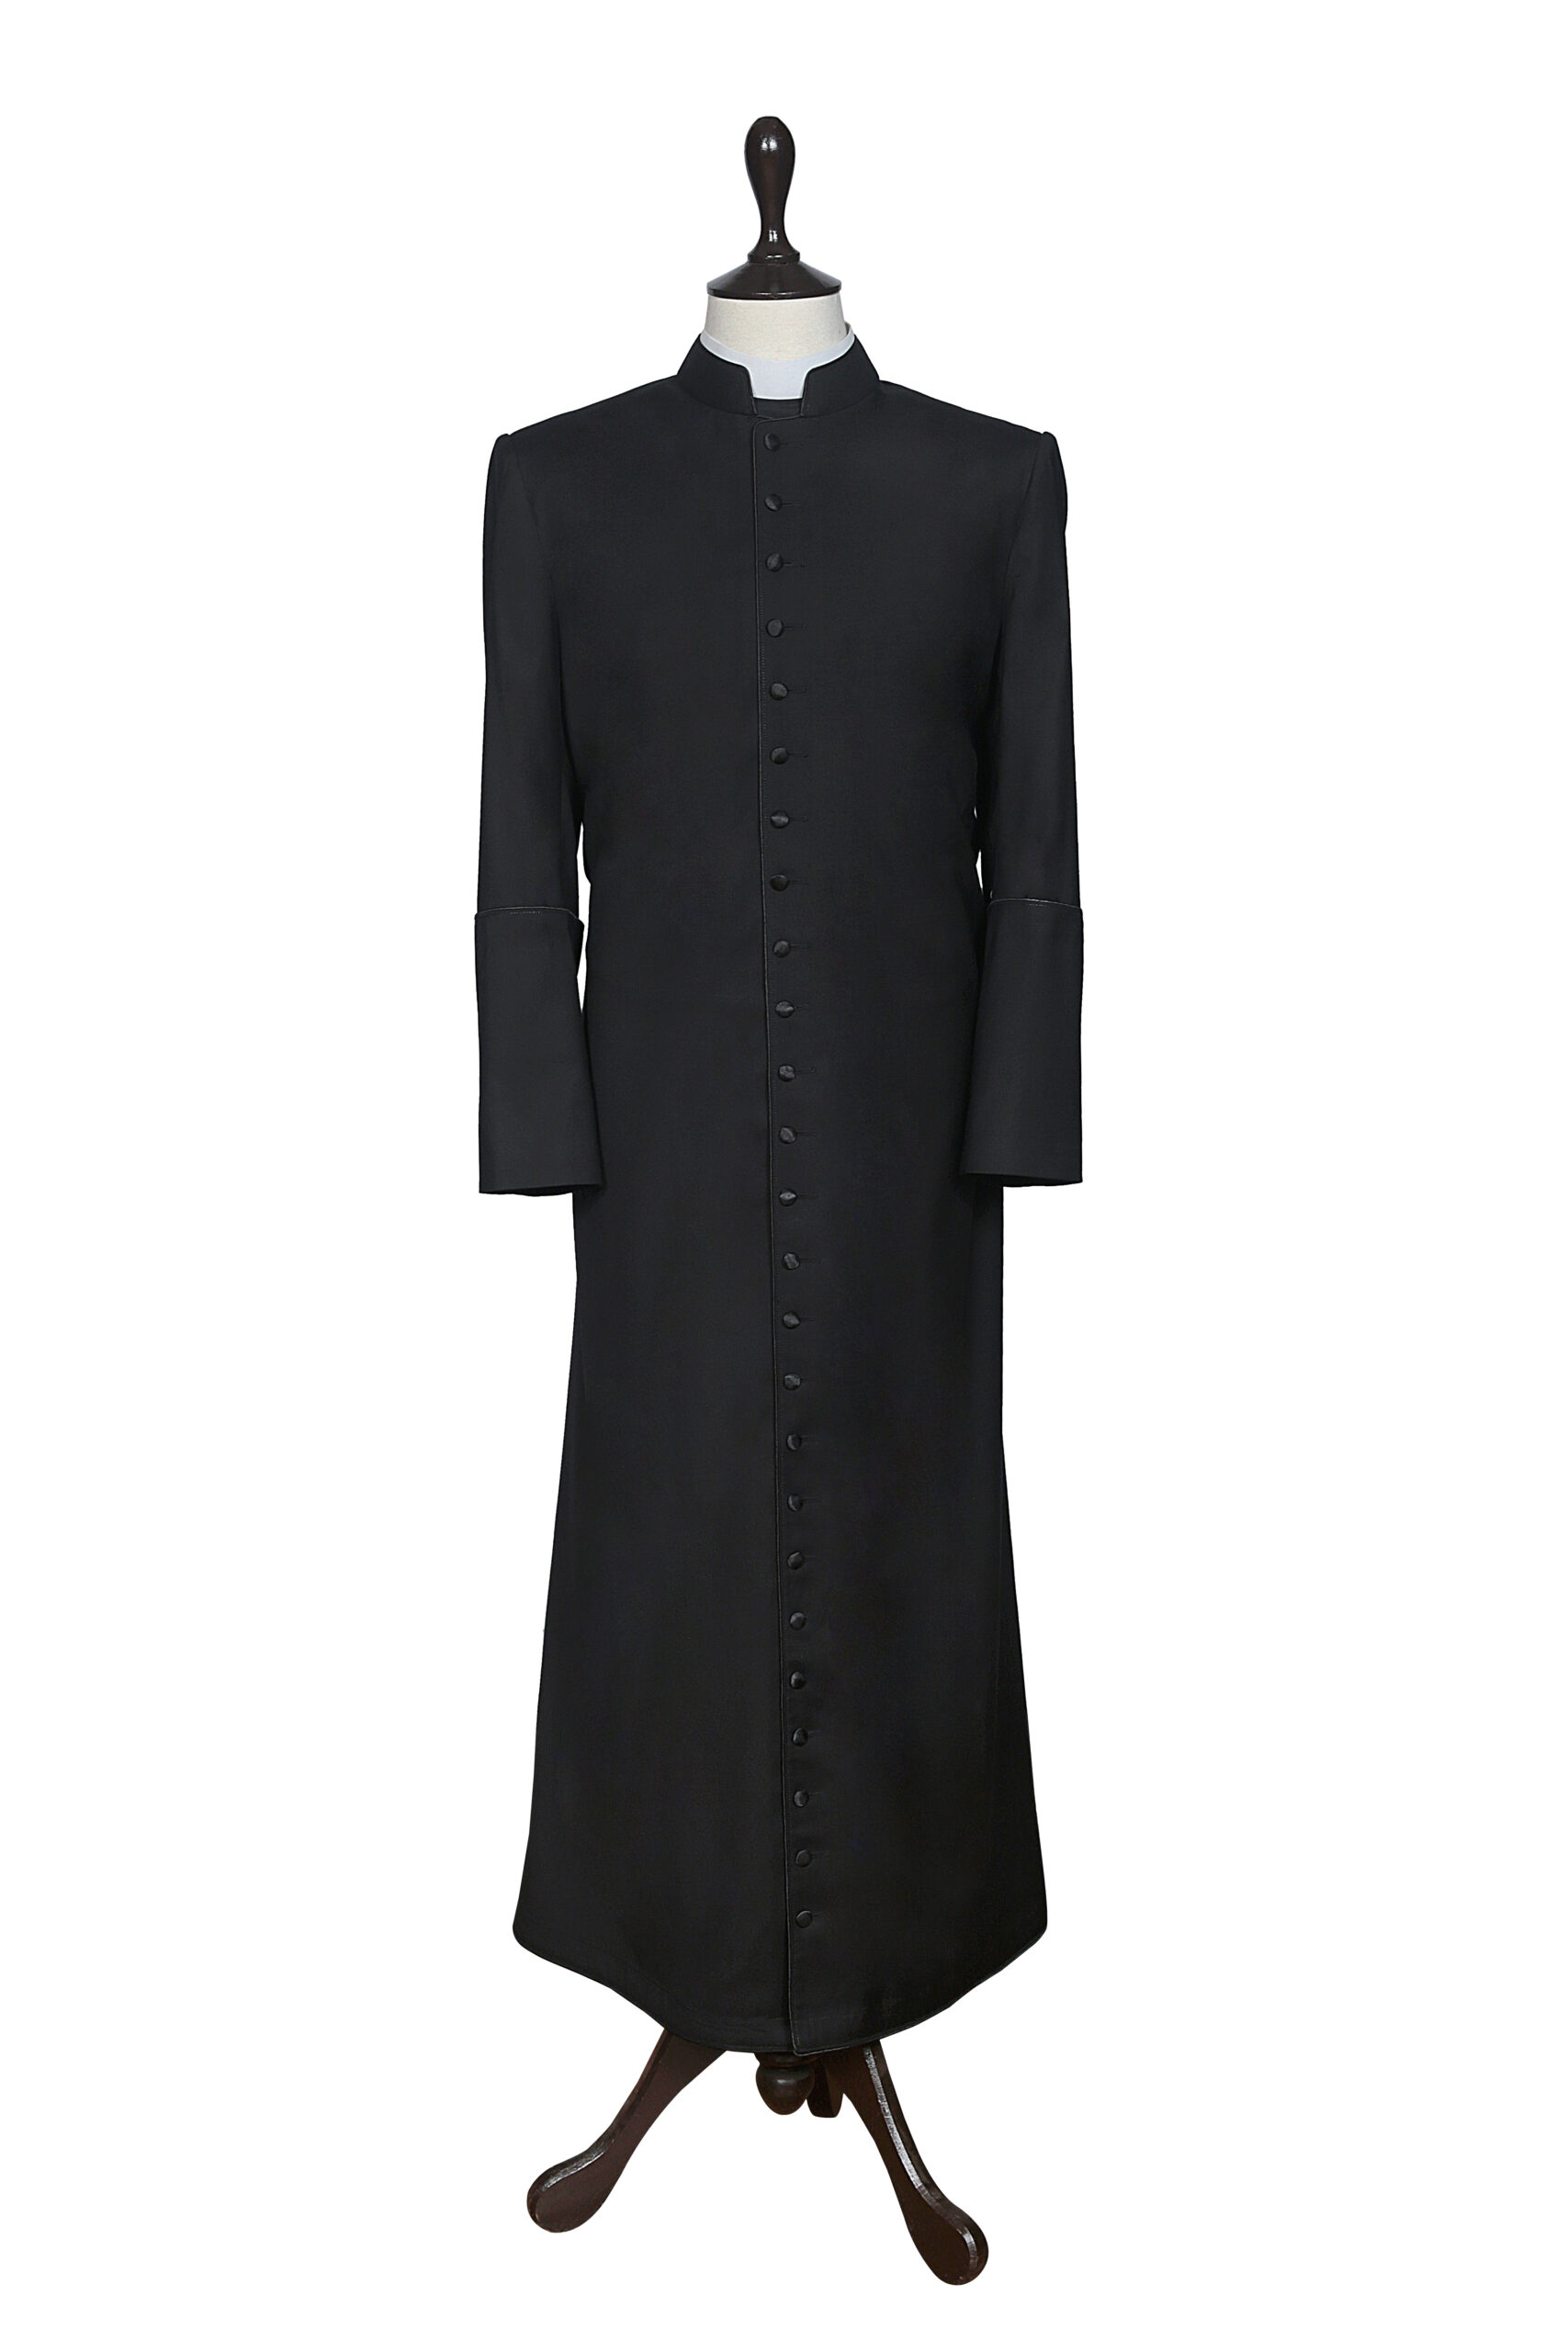 Cassock | Cassock Black | Clergy Cassock | Clergy Wear Shop